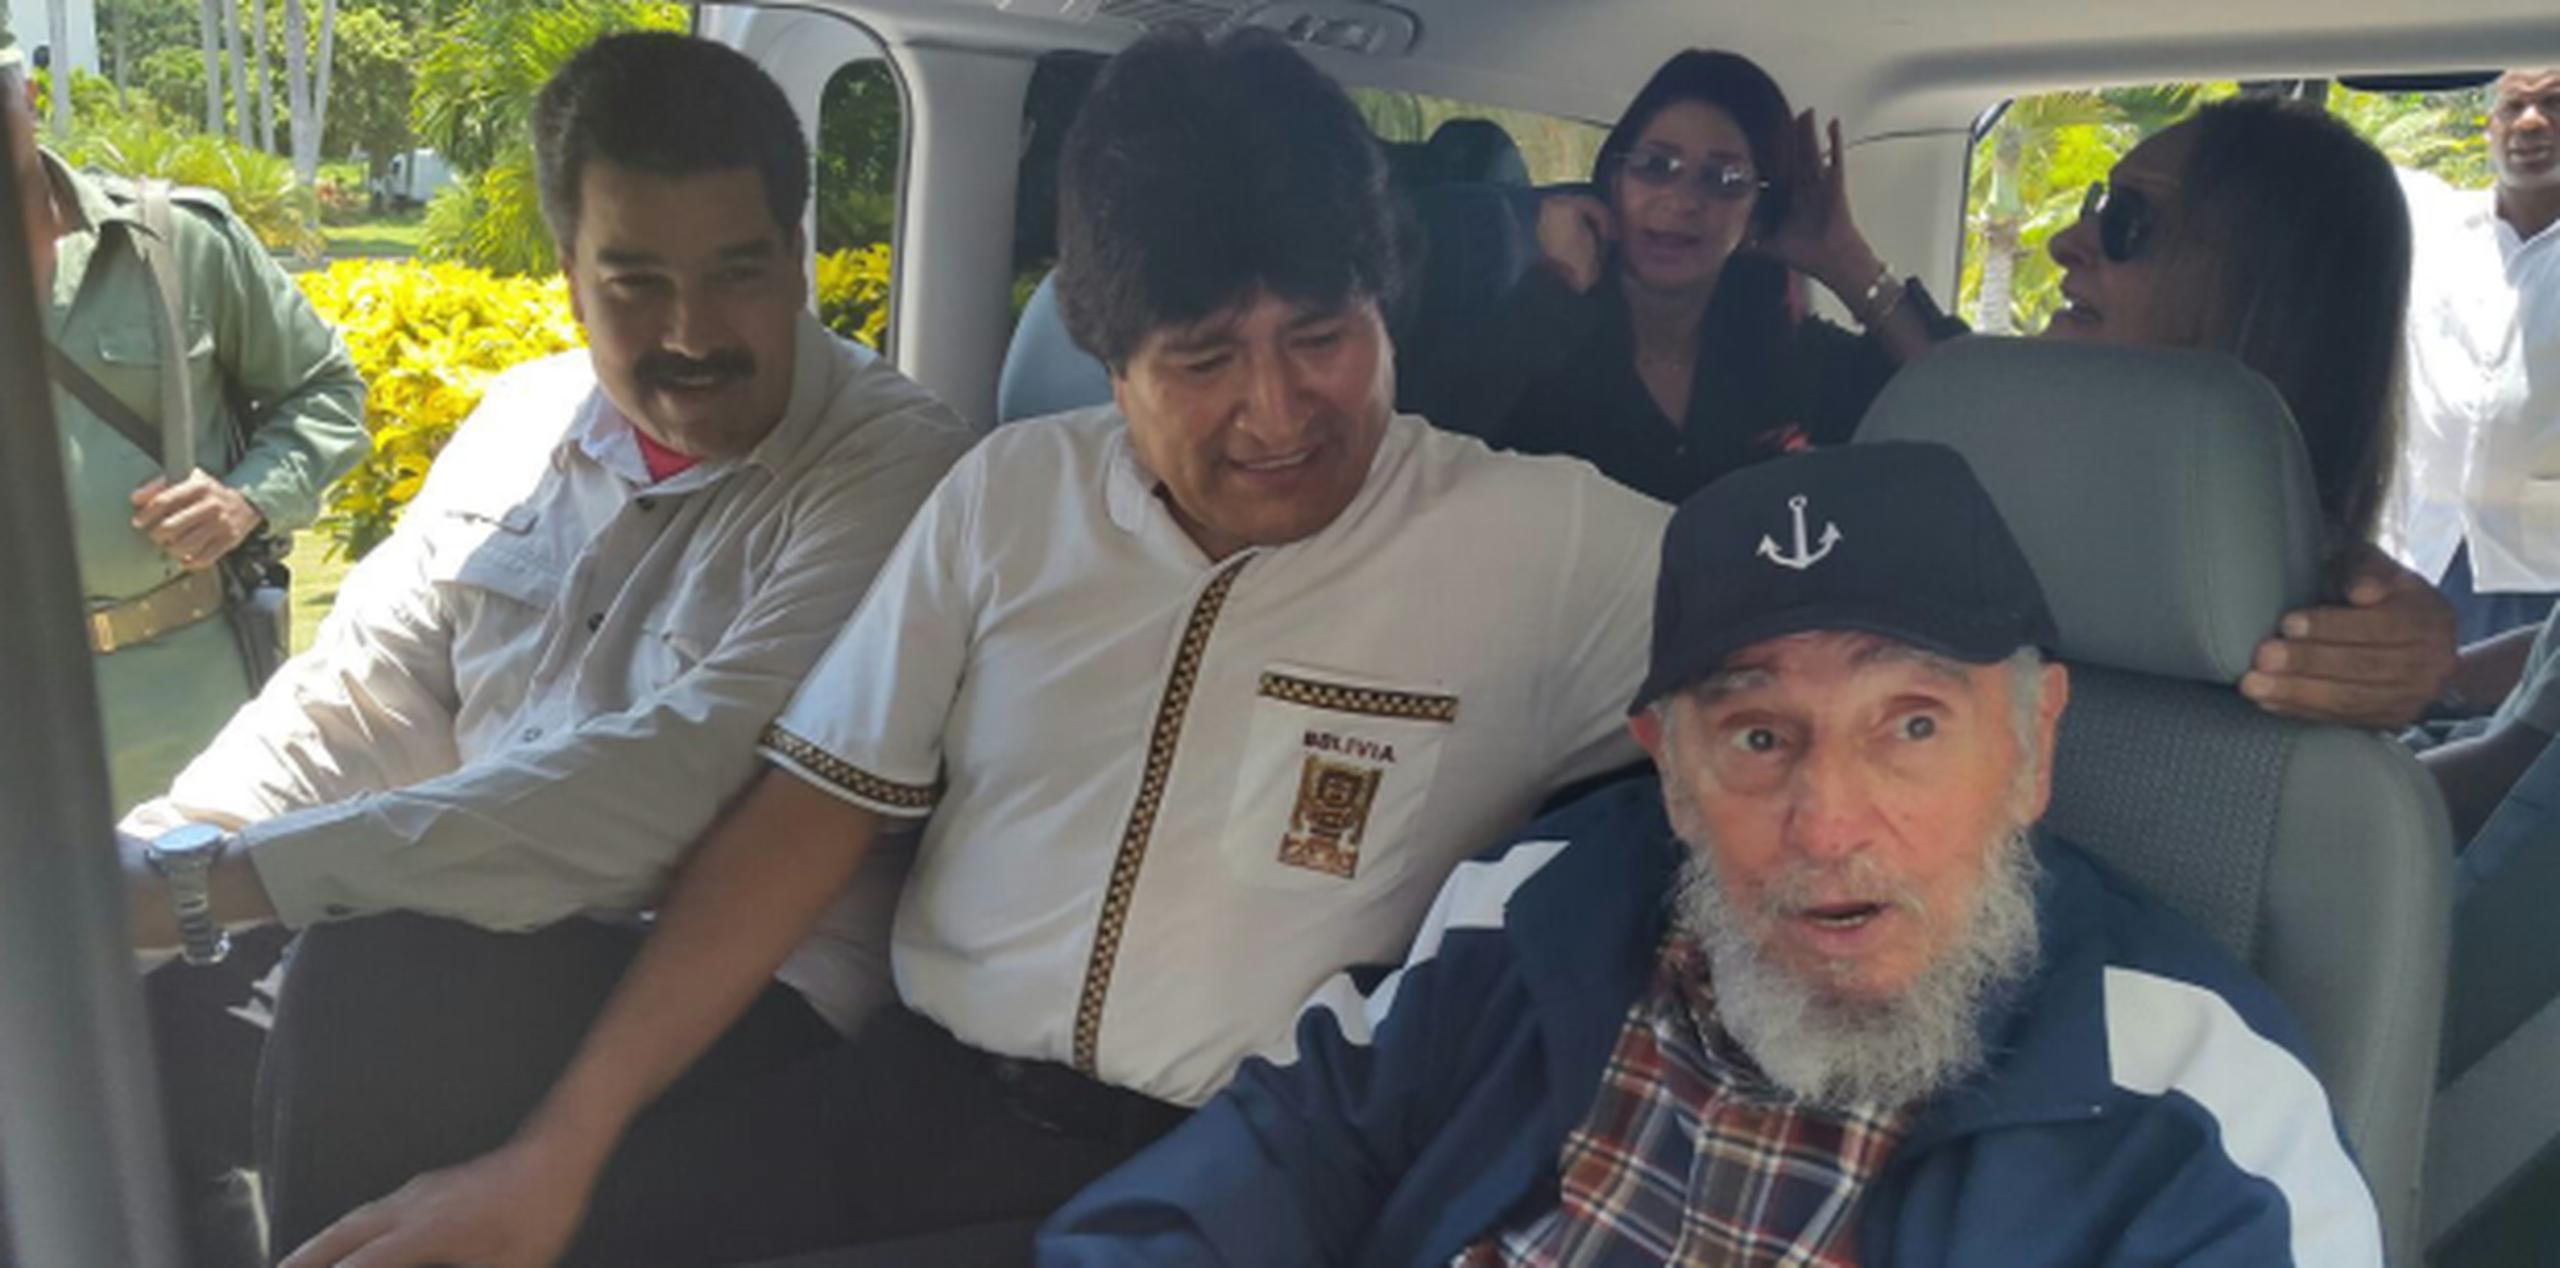 Los presidentes de Venezuela, Nicolás Maduro, y de Bolivia, Evo Morales, acompañaron hoy al exgobernante cubano Fidel Castro. (EFE)